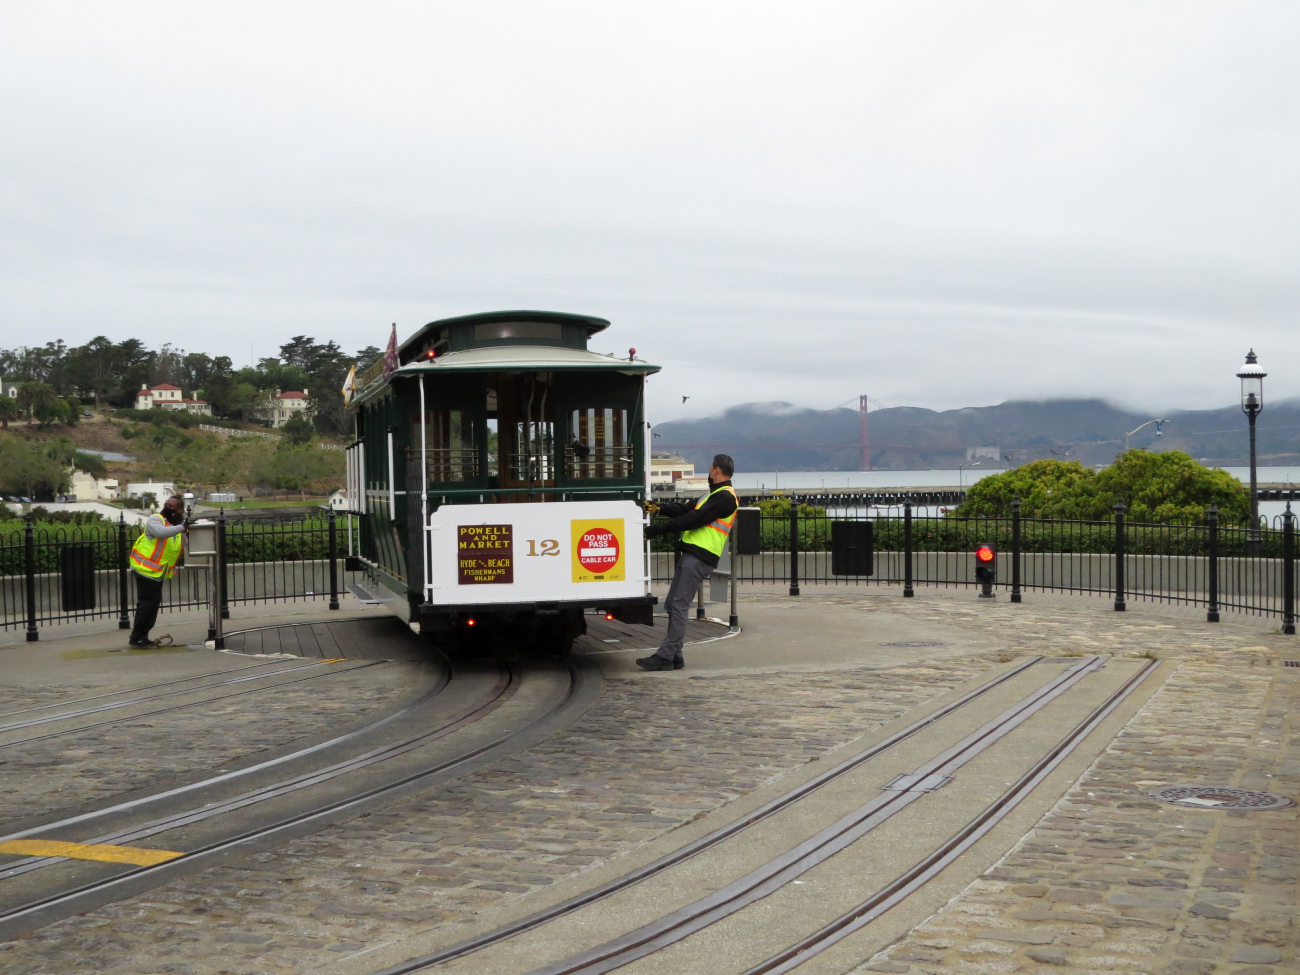 Сан-Франциско, область залива, Carter cable car № 12; Сан-Франциско, область залива — Линии и инфраструктура кабельного трамвая